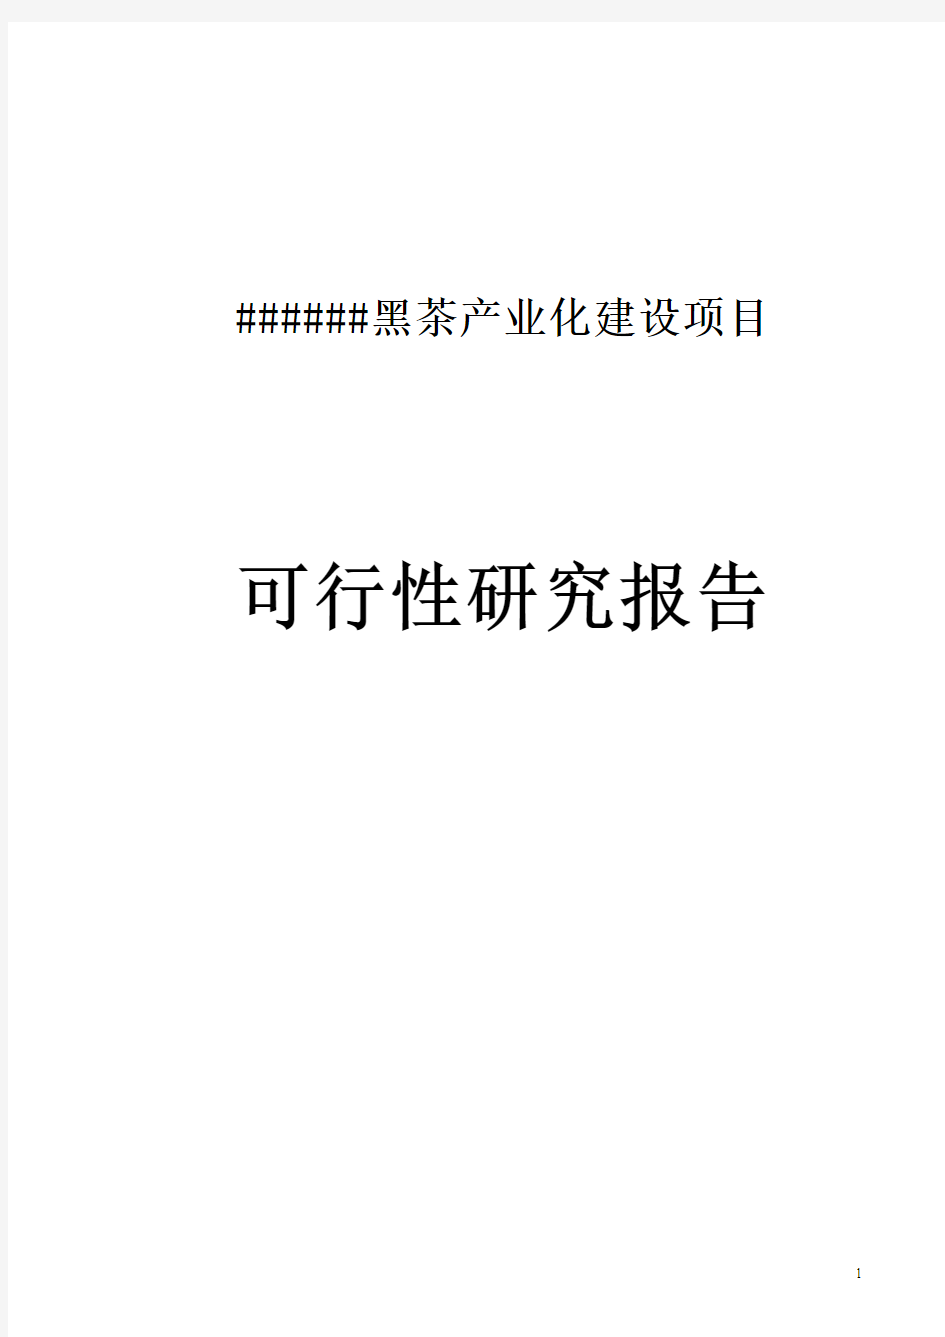 安化县黑茶产业化建设项目可行性研究报告